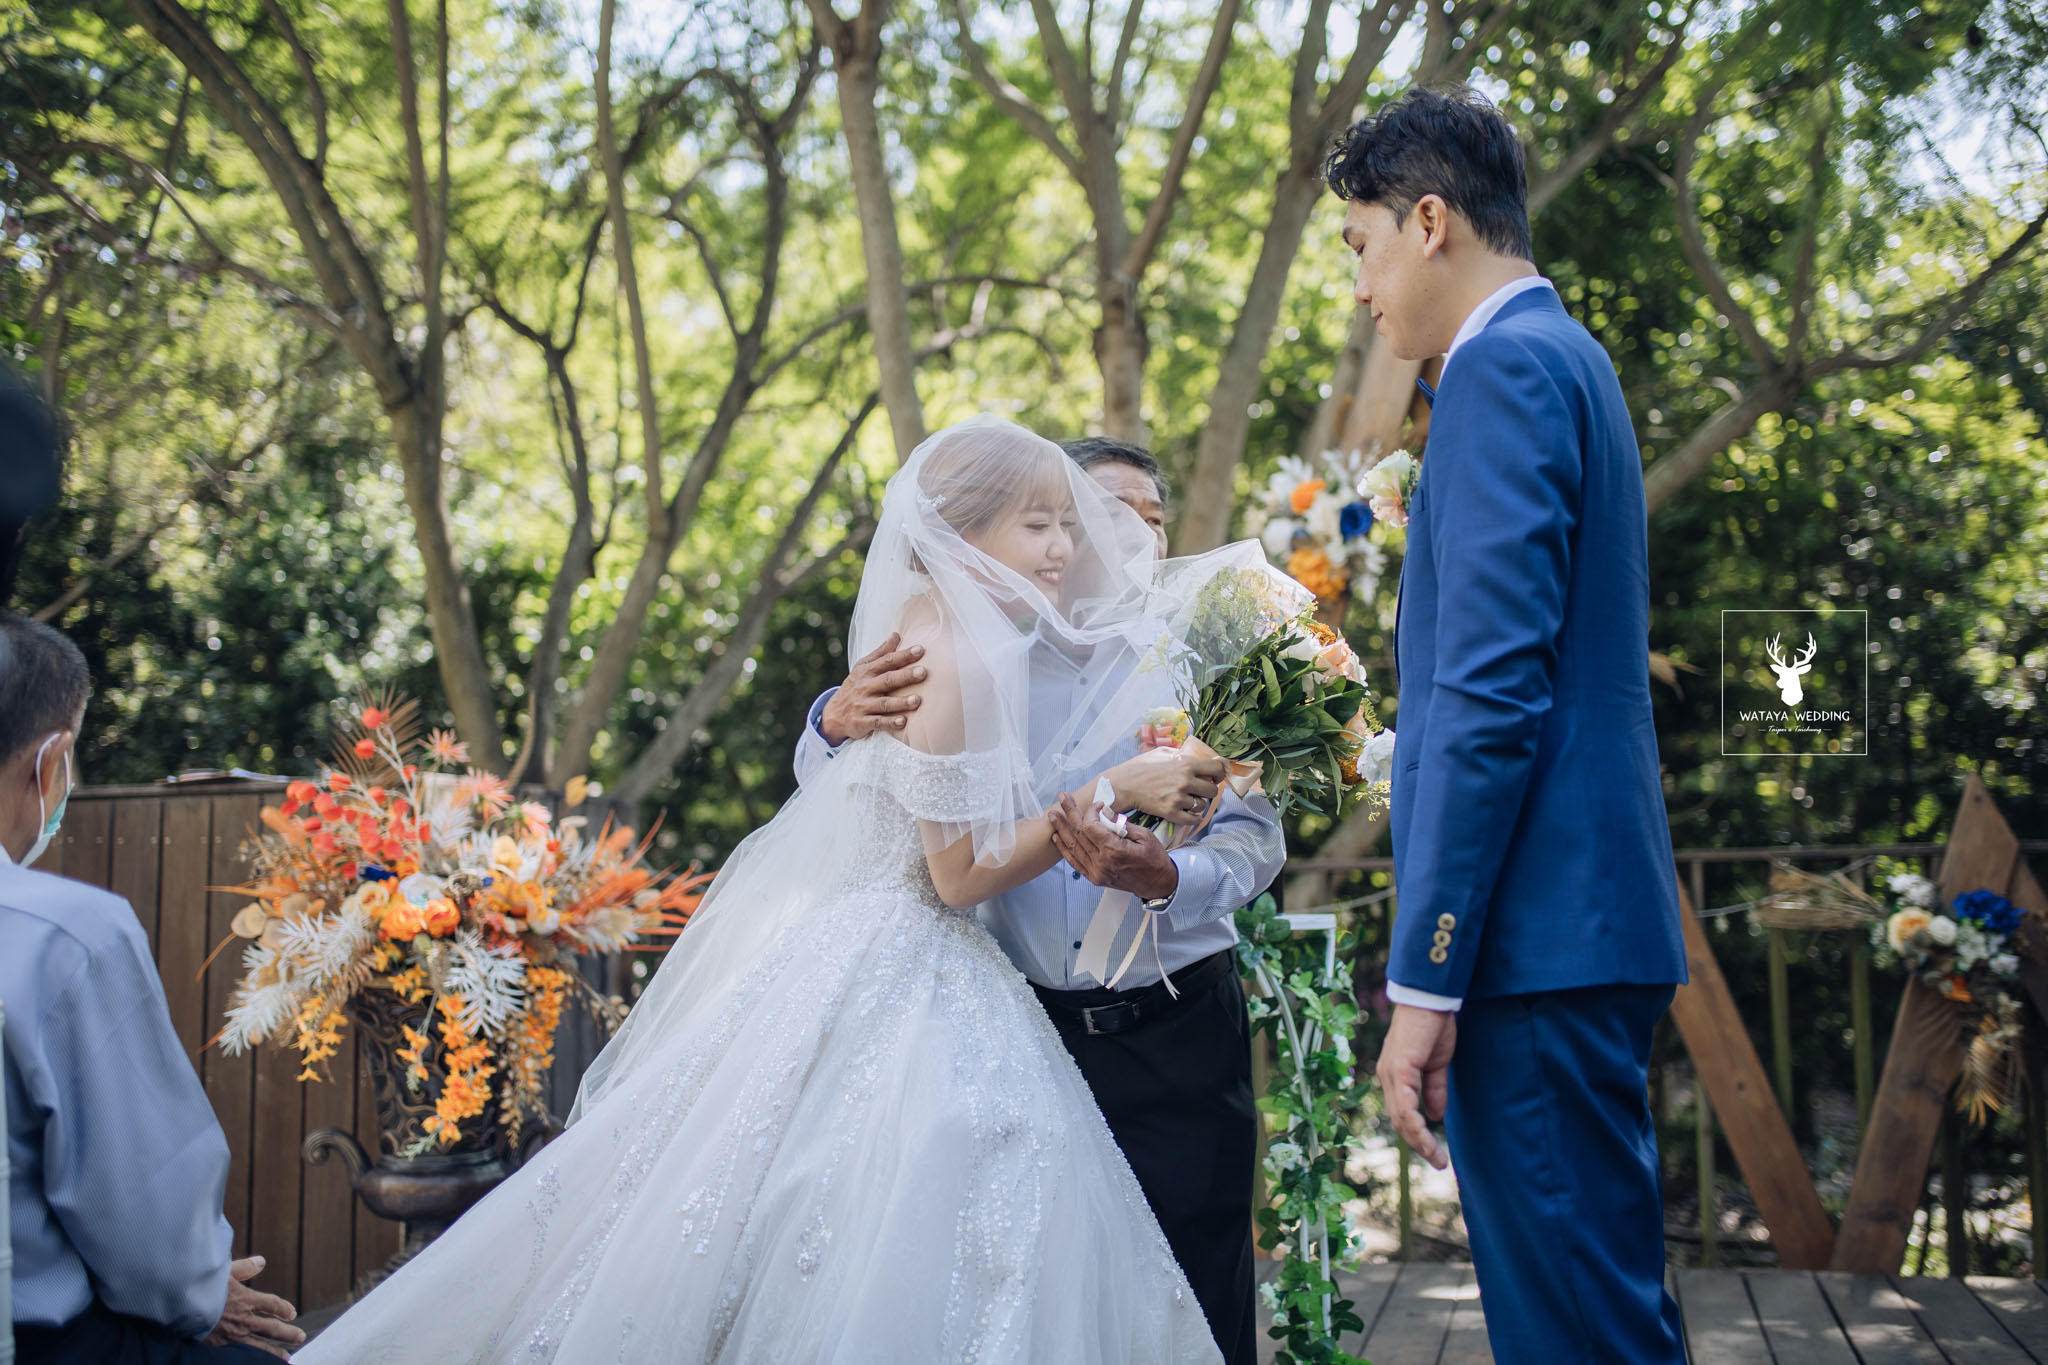 台中綿谷婚禮平面攝影 (31)